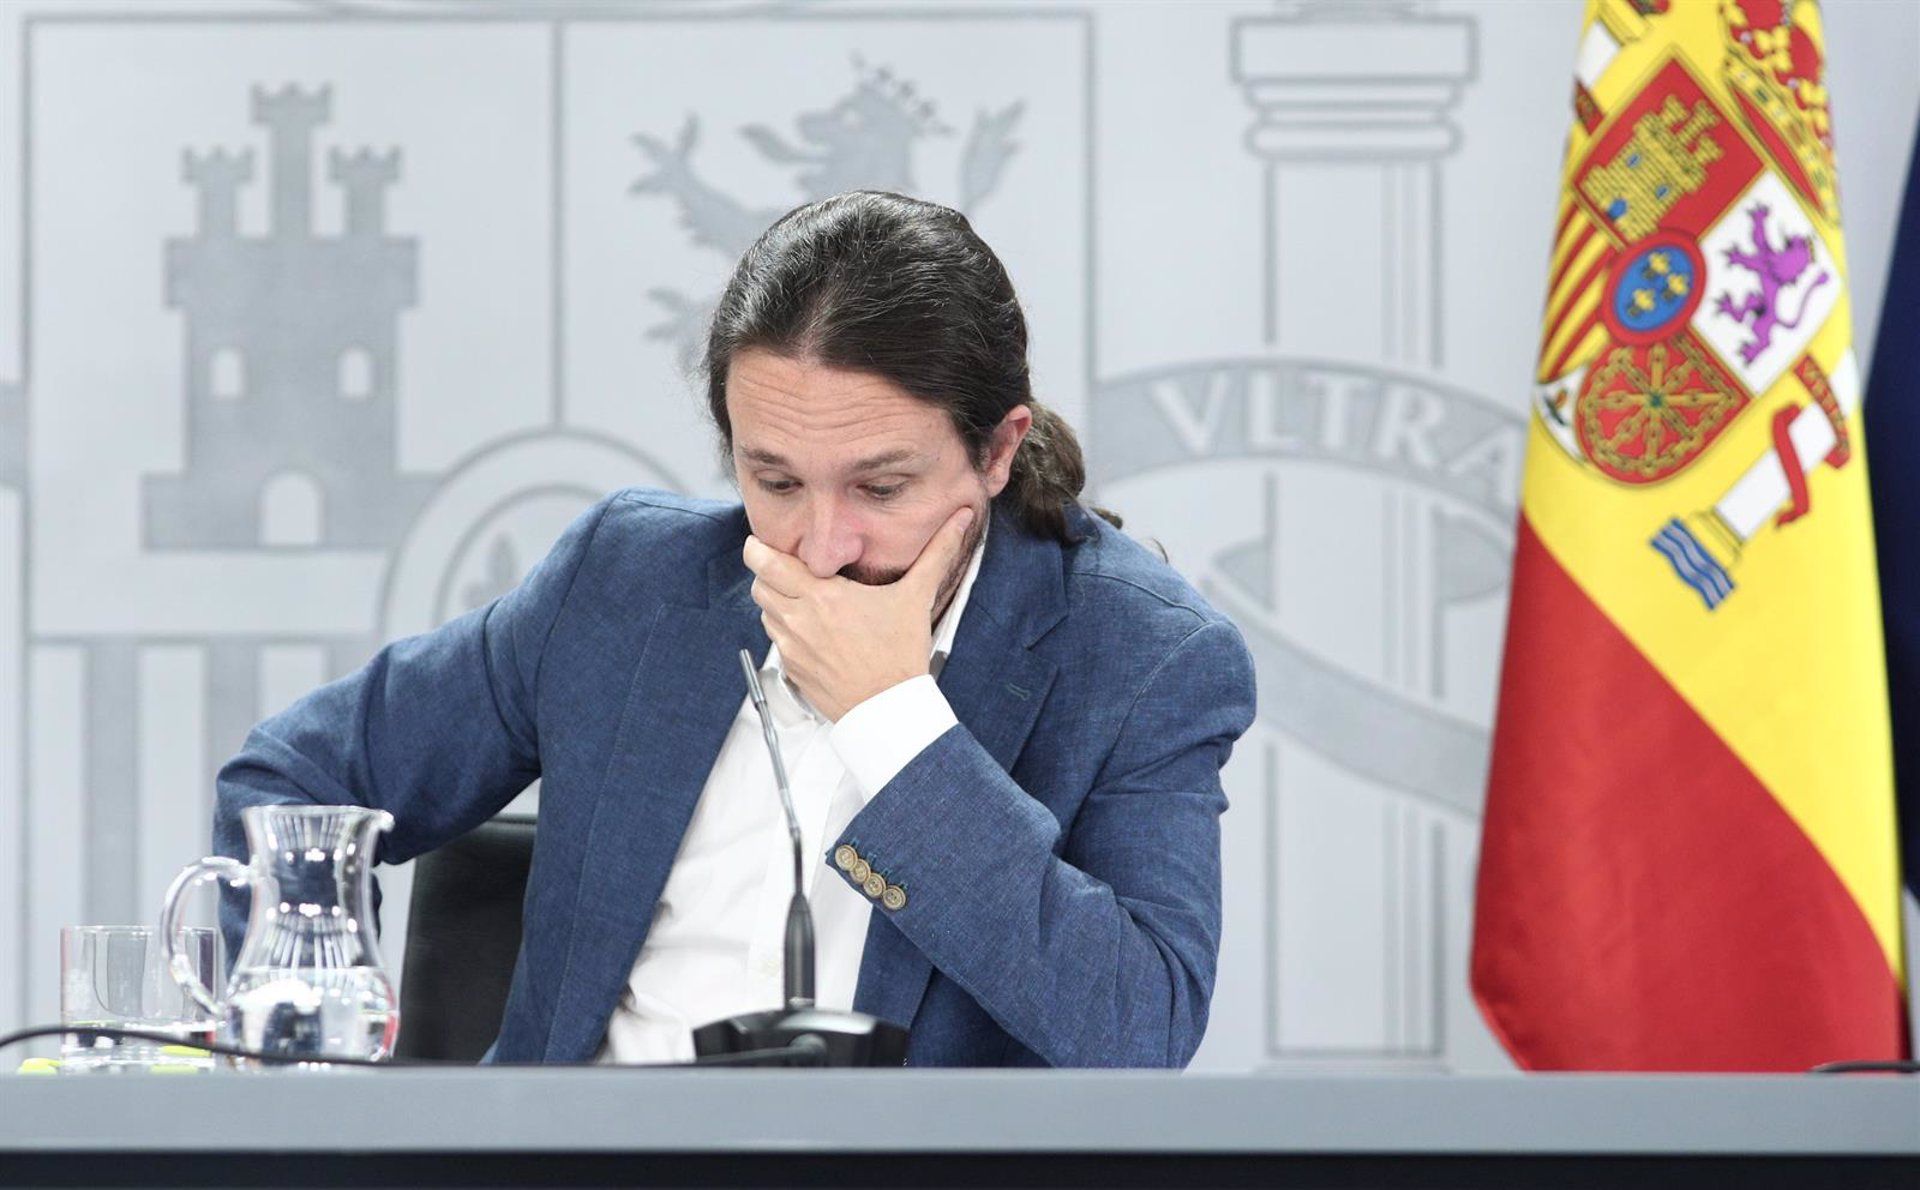 Aborto libre adolescente, la cortina de humo de Podemos para esconder el juicio a Pablo Iglesias